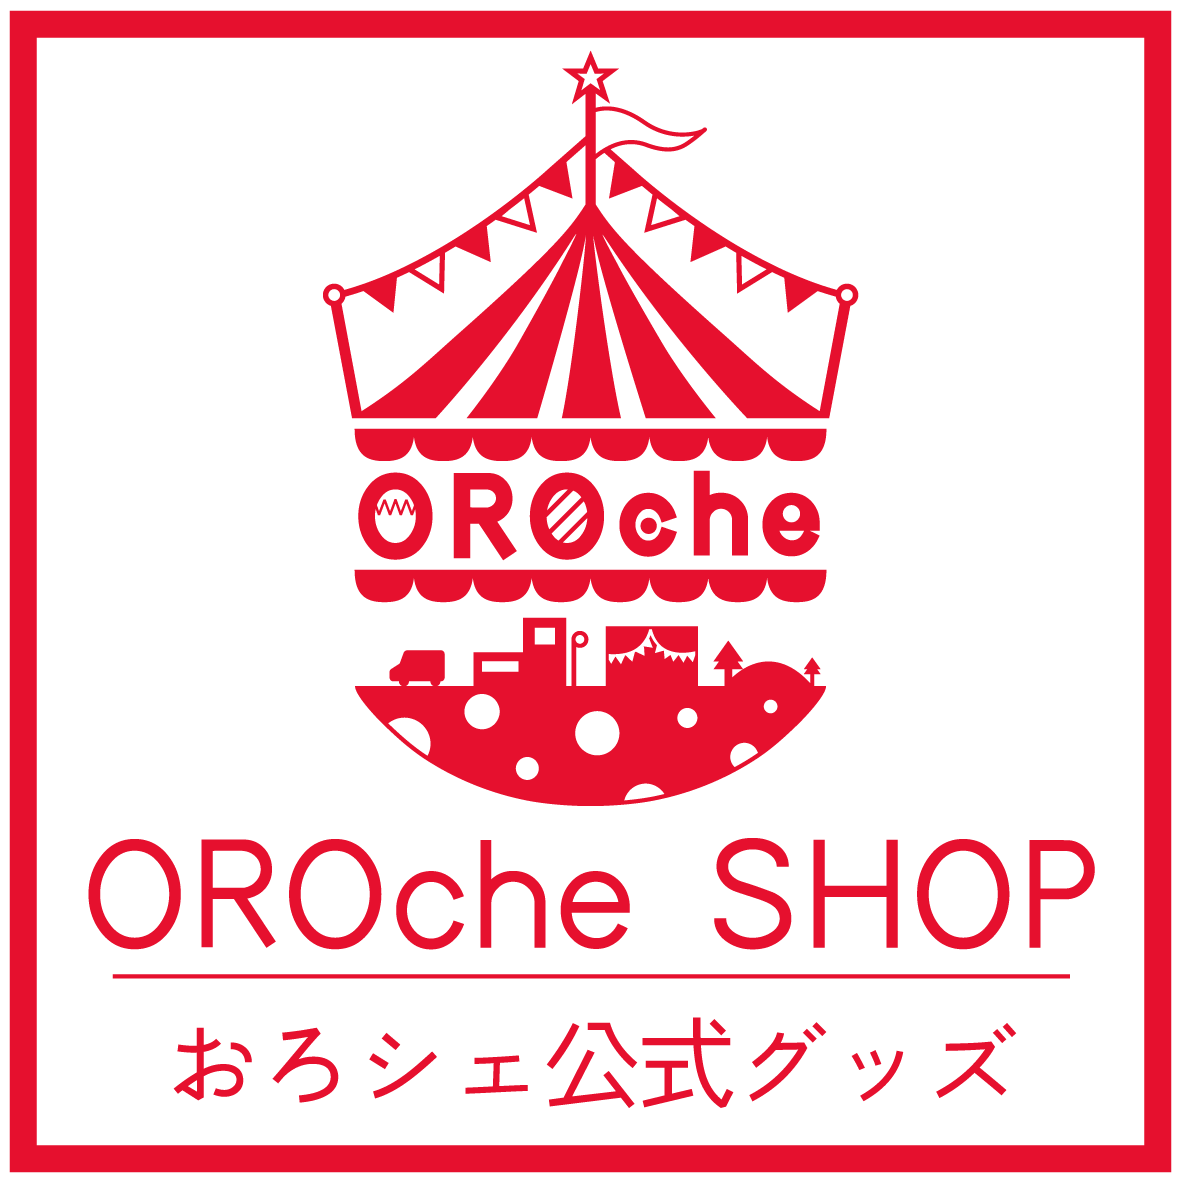 OROcheSHOP